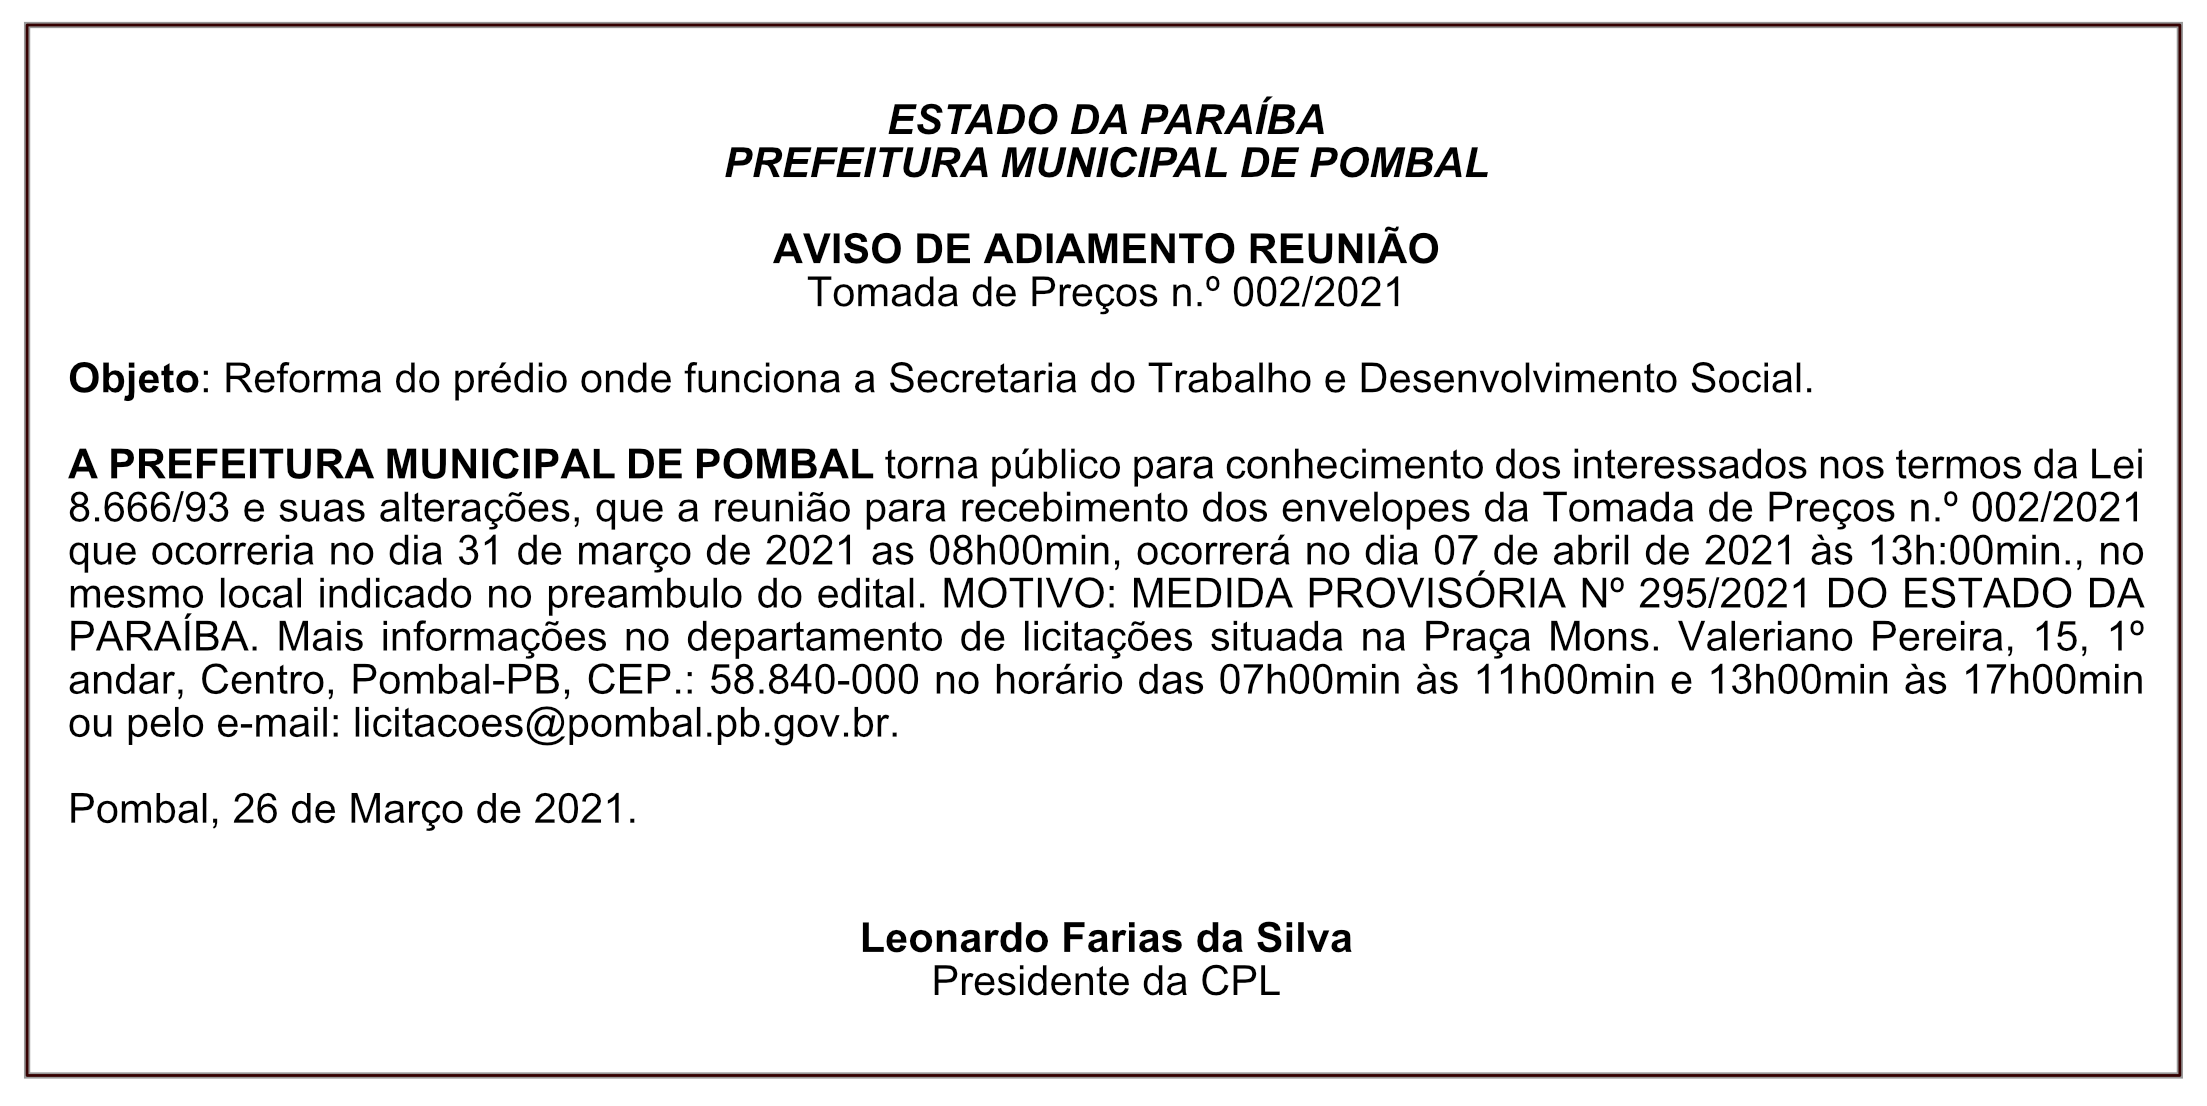 PREFEITURA MUNICIPAL DE POMBAL – AVISO DE ADIAMENTO – REUNIÃO TOMADA DE PREÇOS Nº 002/2021